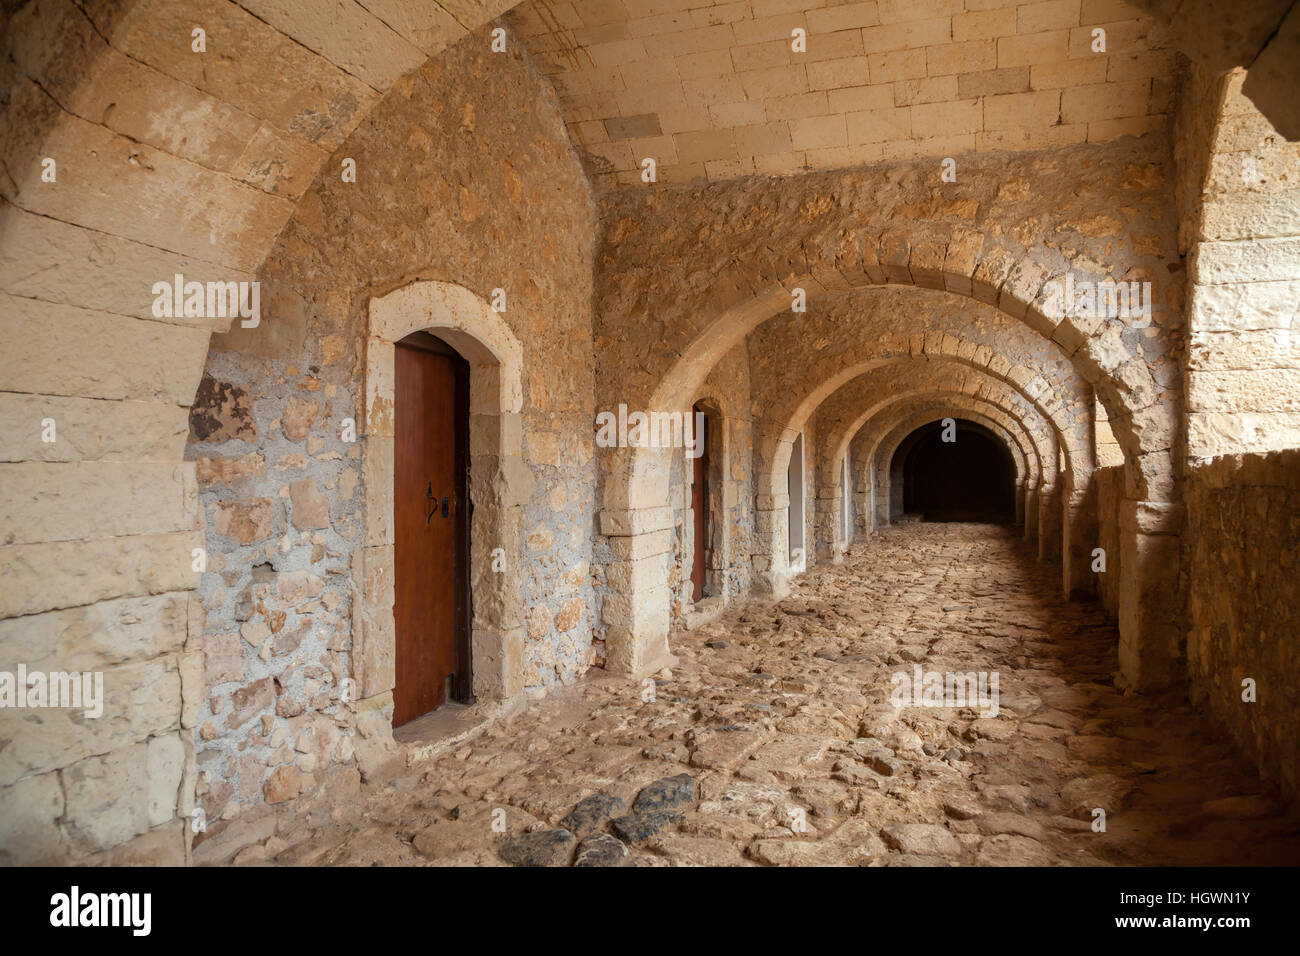 Couloir de pierre grecque orthodoxe au monastère d'Arkadi en Crète Grèce Banque D'Images